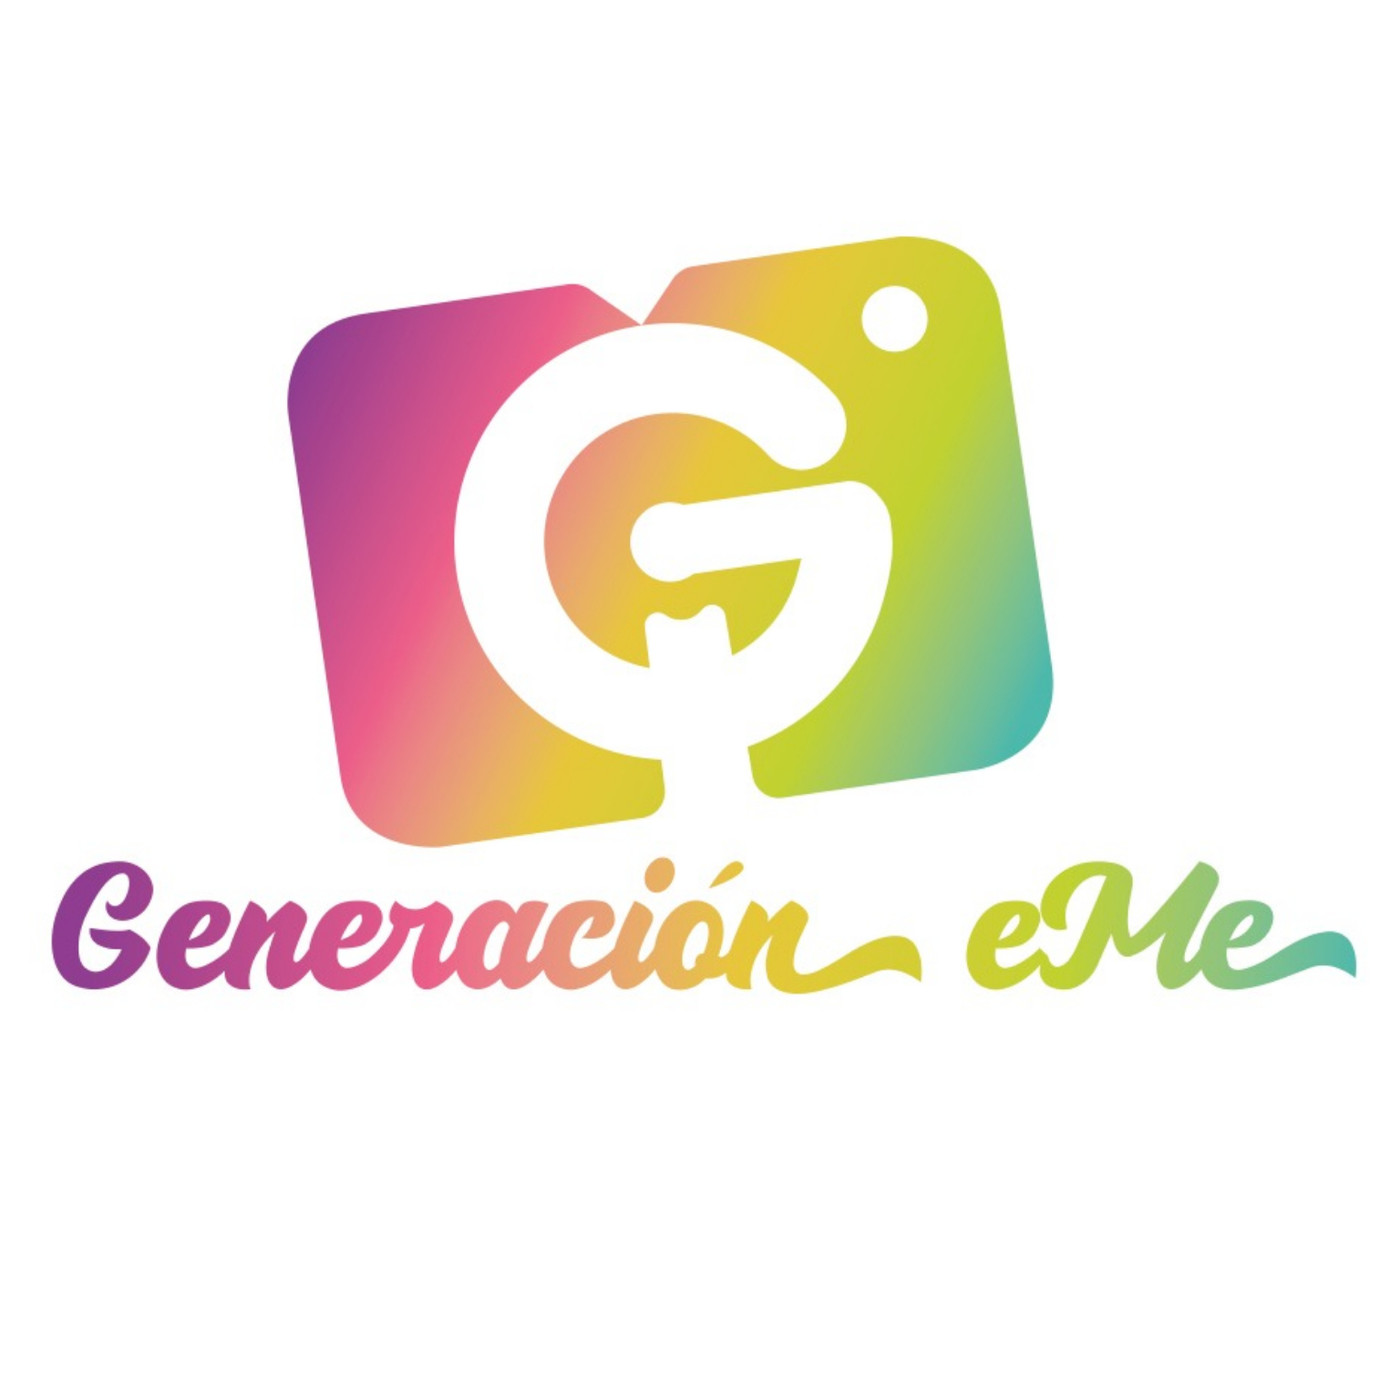 Generación eMe